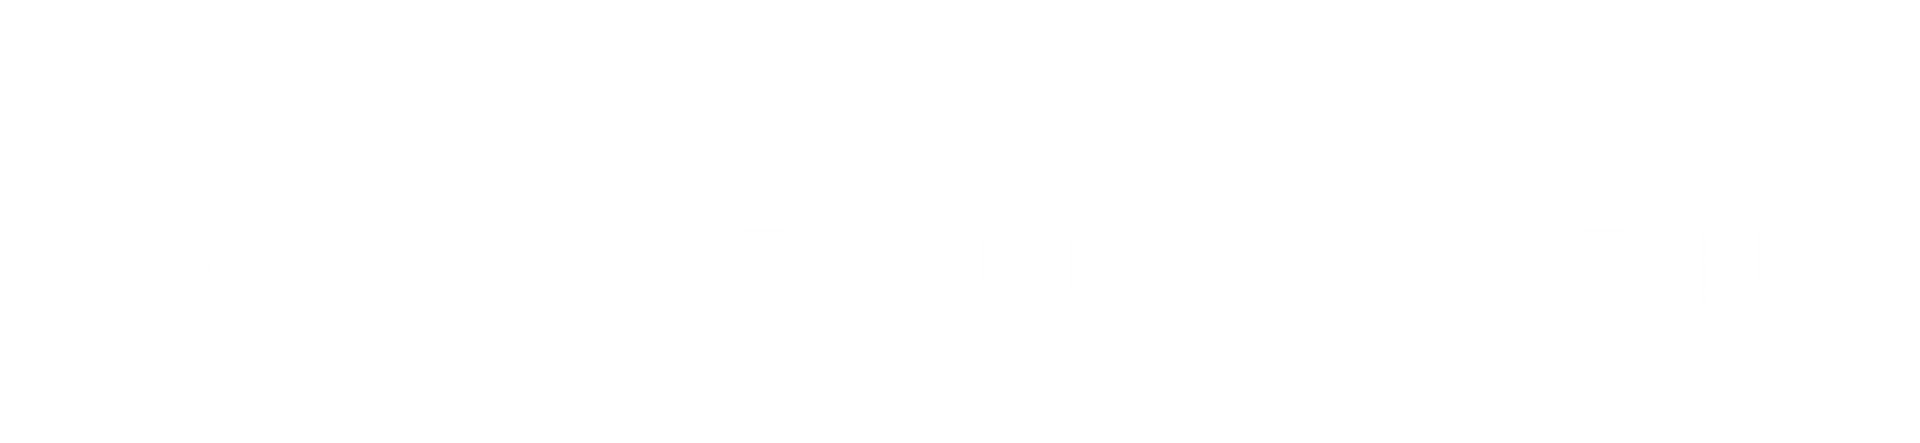 A.G. Beck Insurance Inc